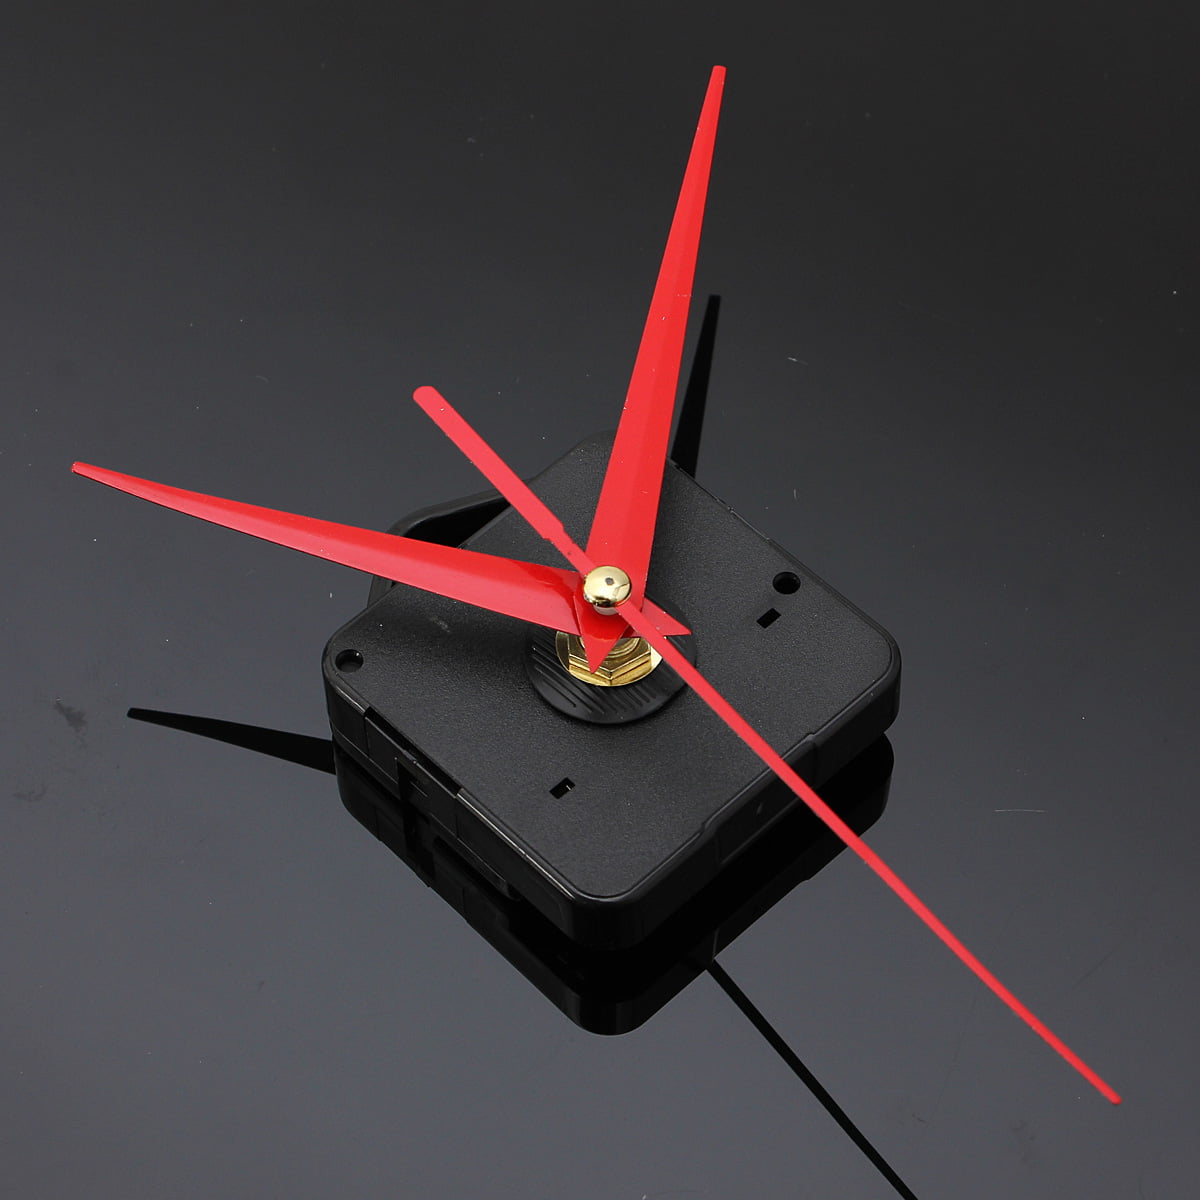 DIY Quartz Movement Mechanism Clock-Black and Red Hands Part Kit Tools UK 